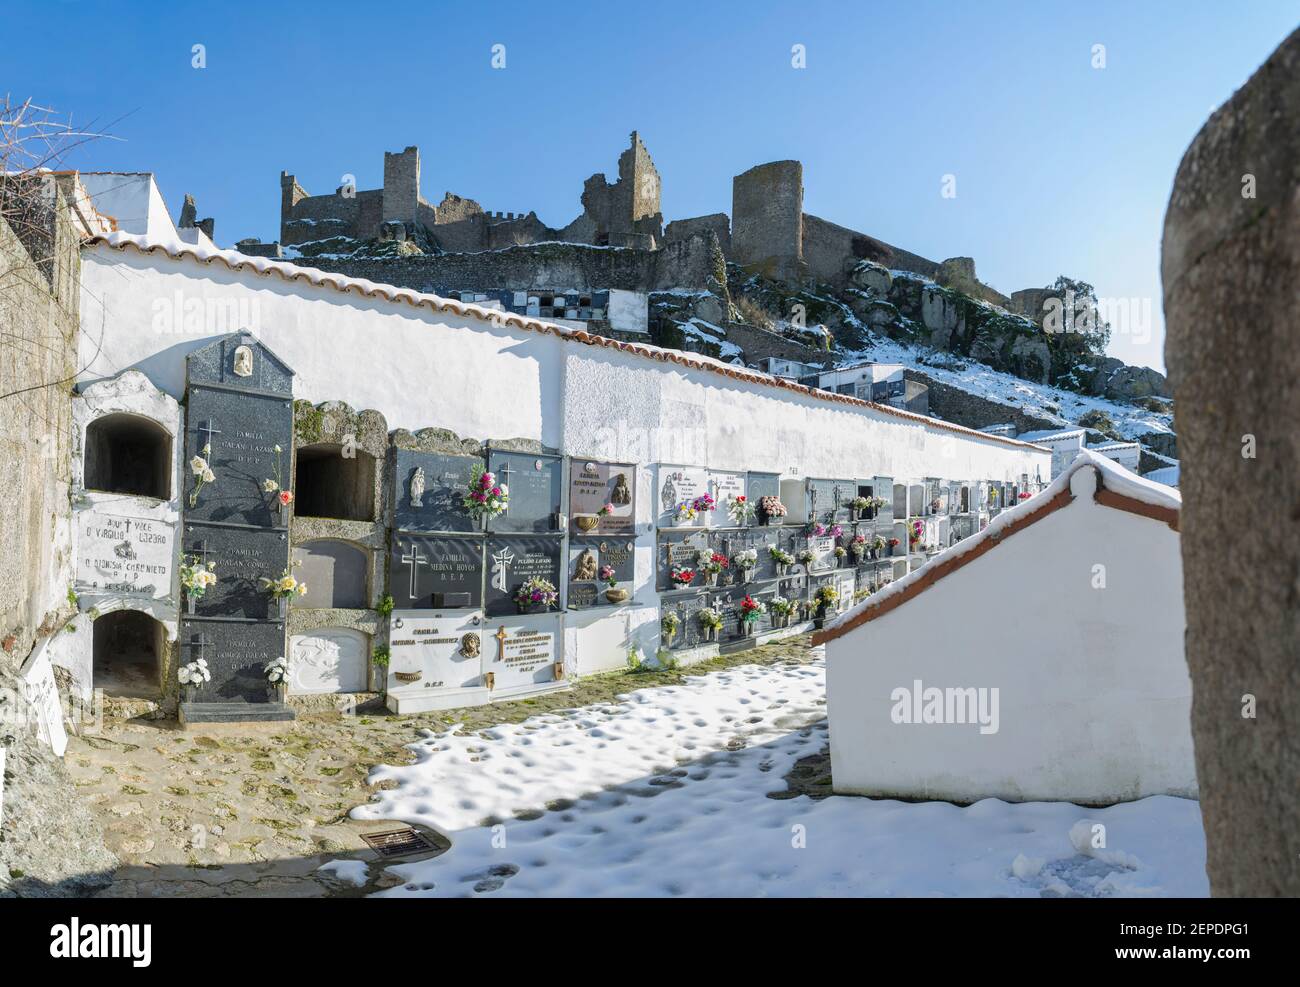 Montanchez, Espagne - 11 janvier 2021 : cimetière de Montanchez recouvert de neige. Récompensé par le prix du meilleur cimetière de Spains en 2015. Caceres, Estrémadure, S. Banque D'Images